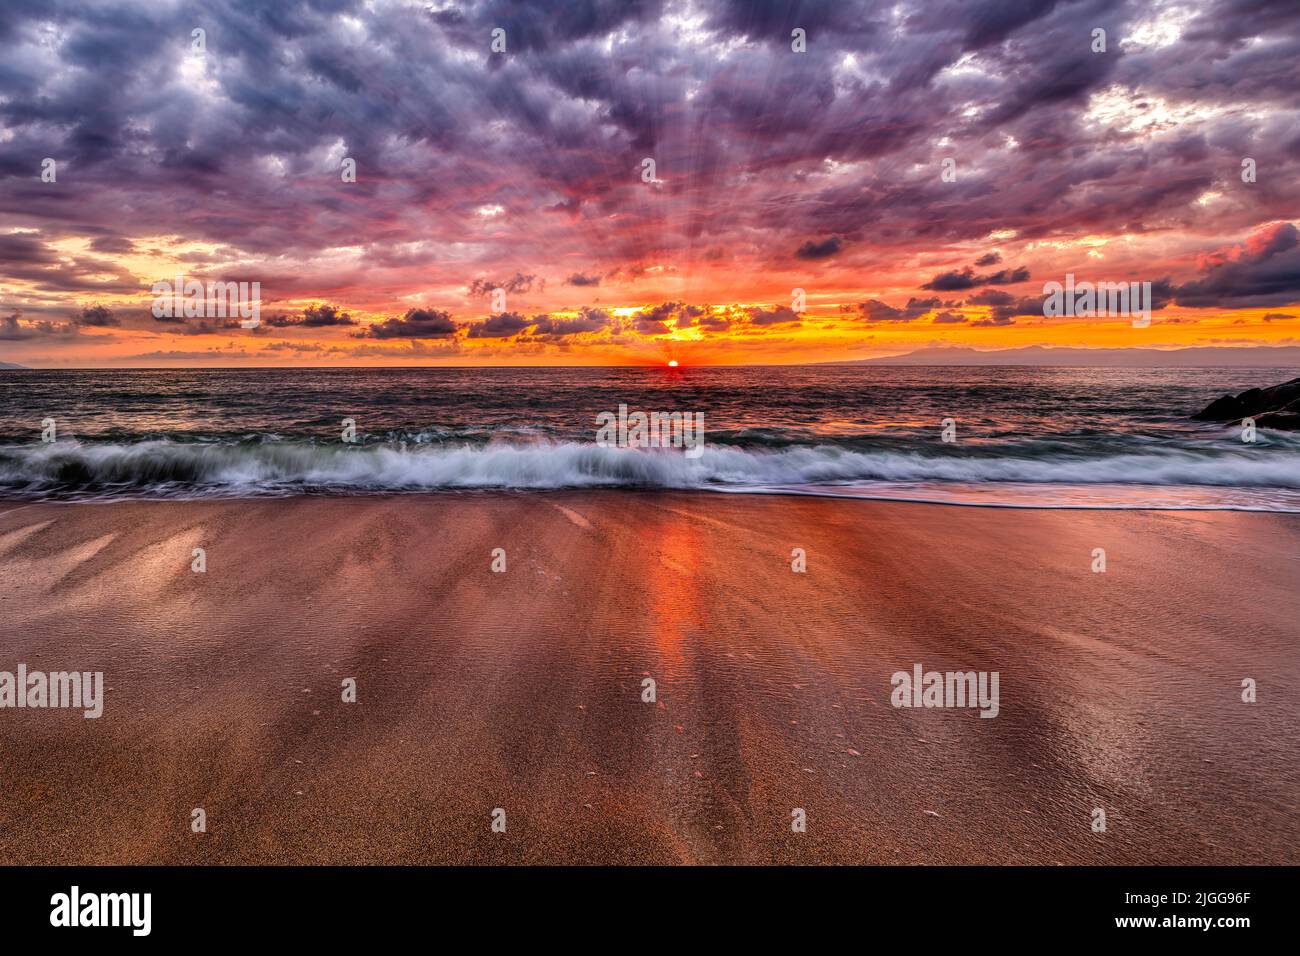 Los rayos del sol están reventando en el horizonte del océano con un vivo y colorido cielo de puesta de sol Foto de stock